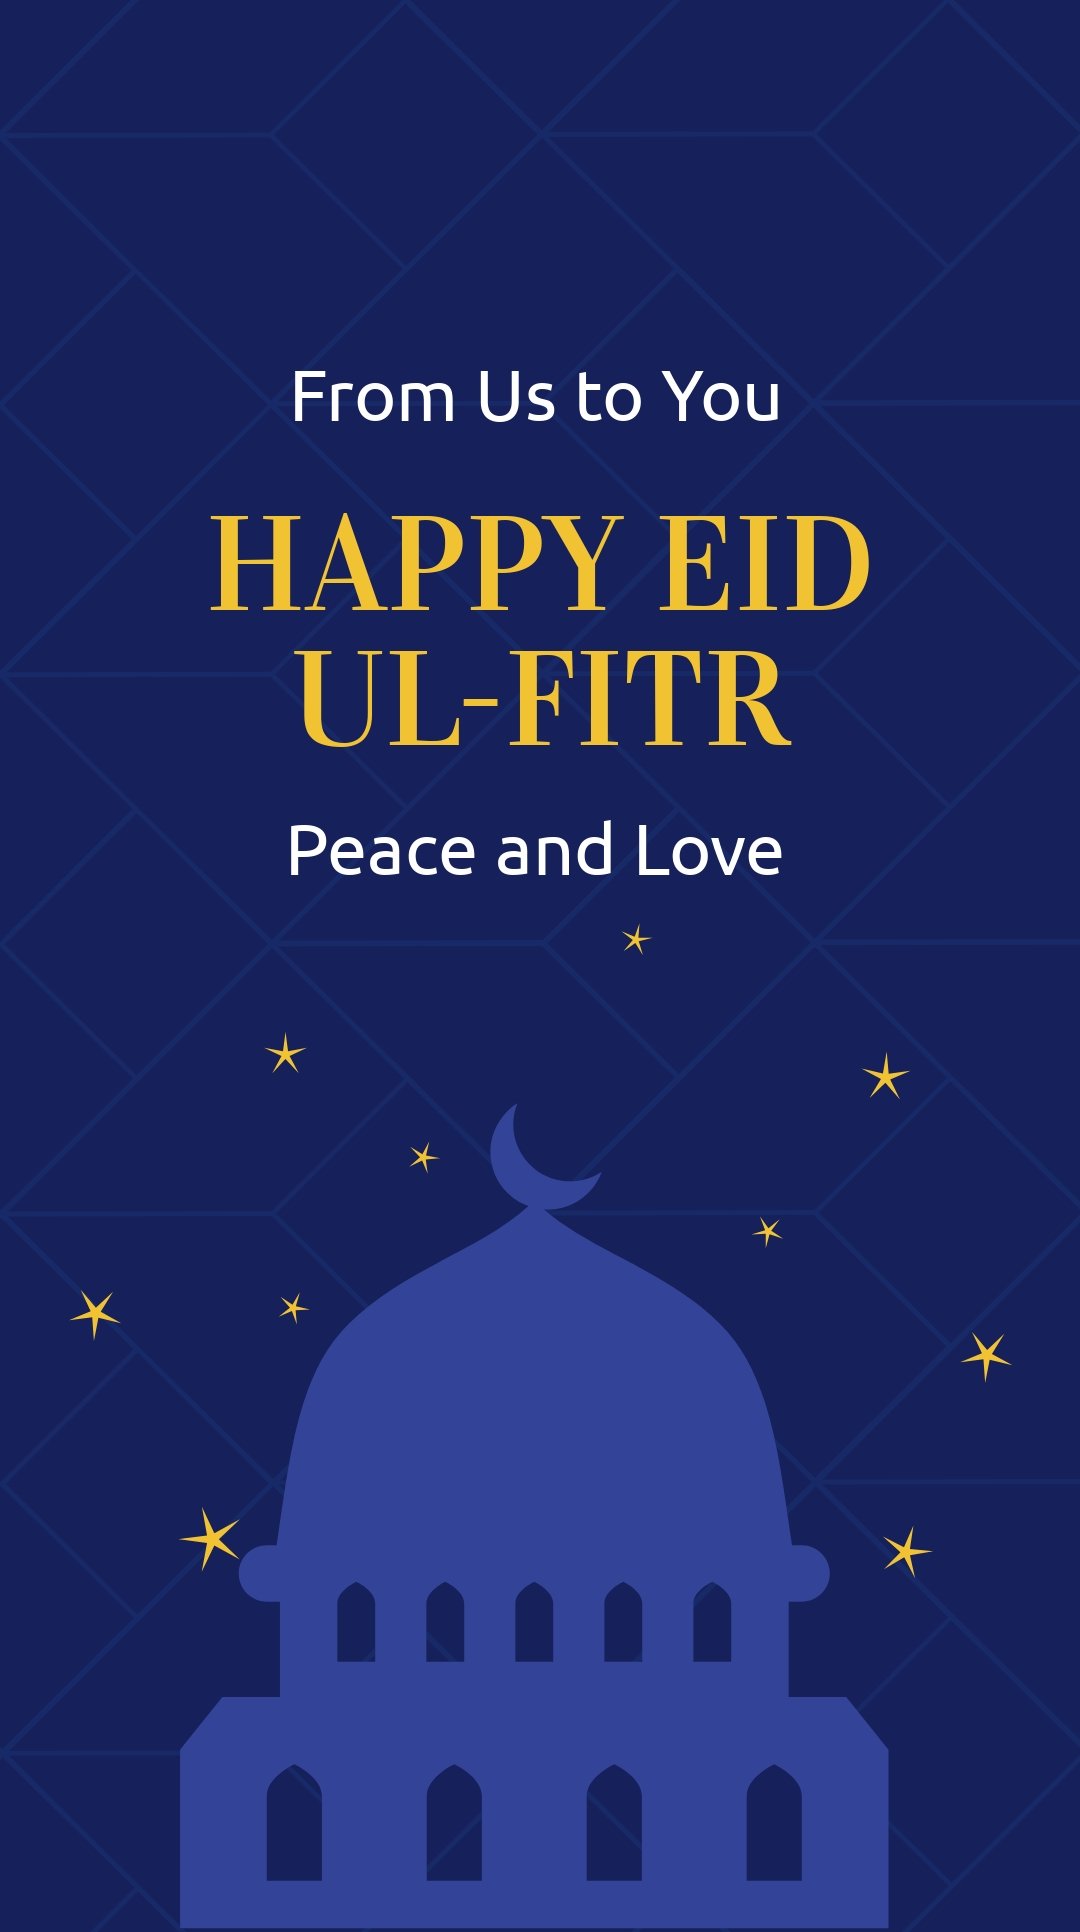 Happy Eid ul-Fitr Whatsapp Post Template